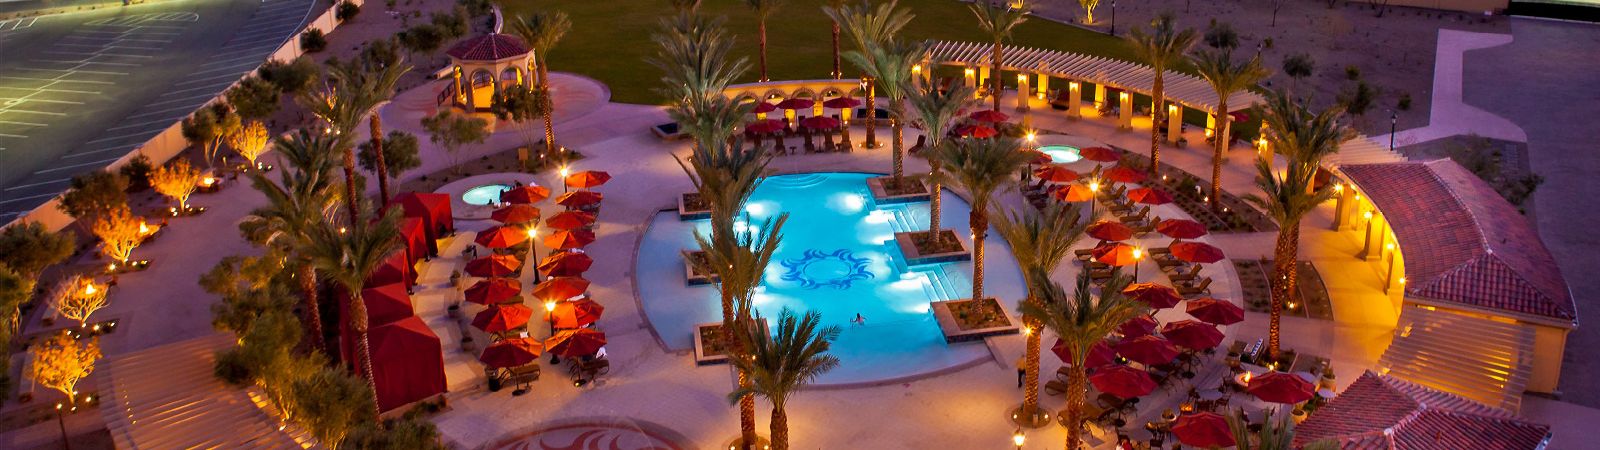 Casino Del Sol Resort Pool 